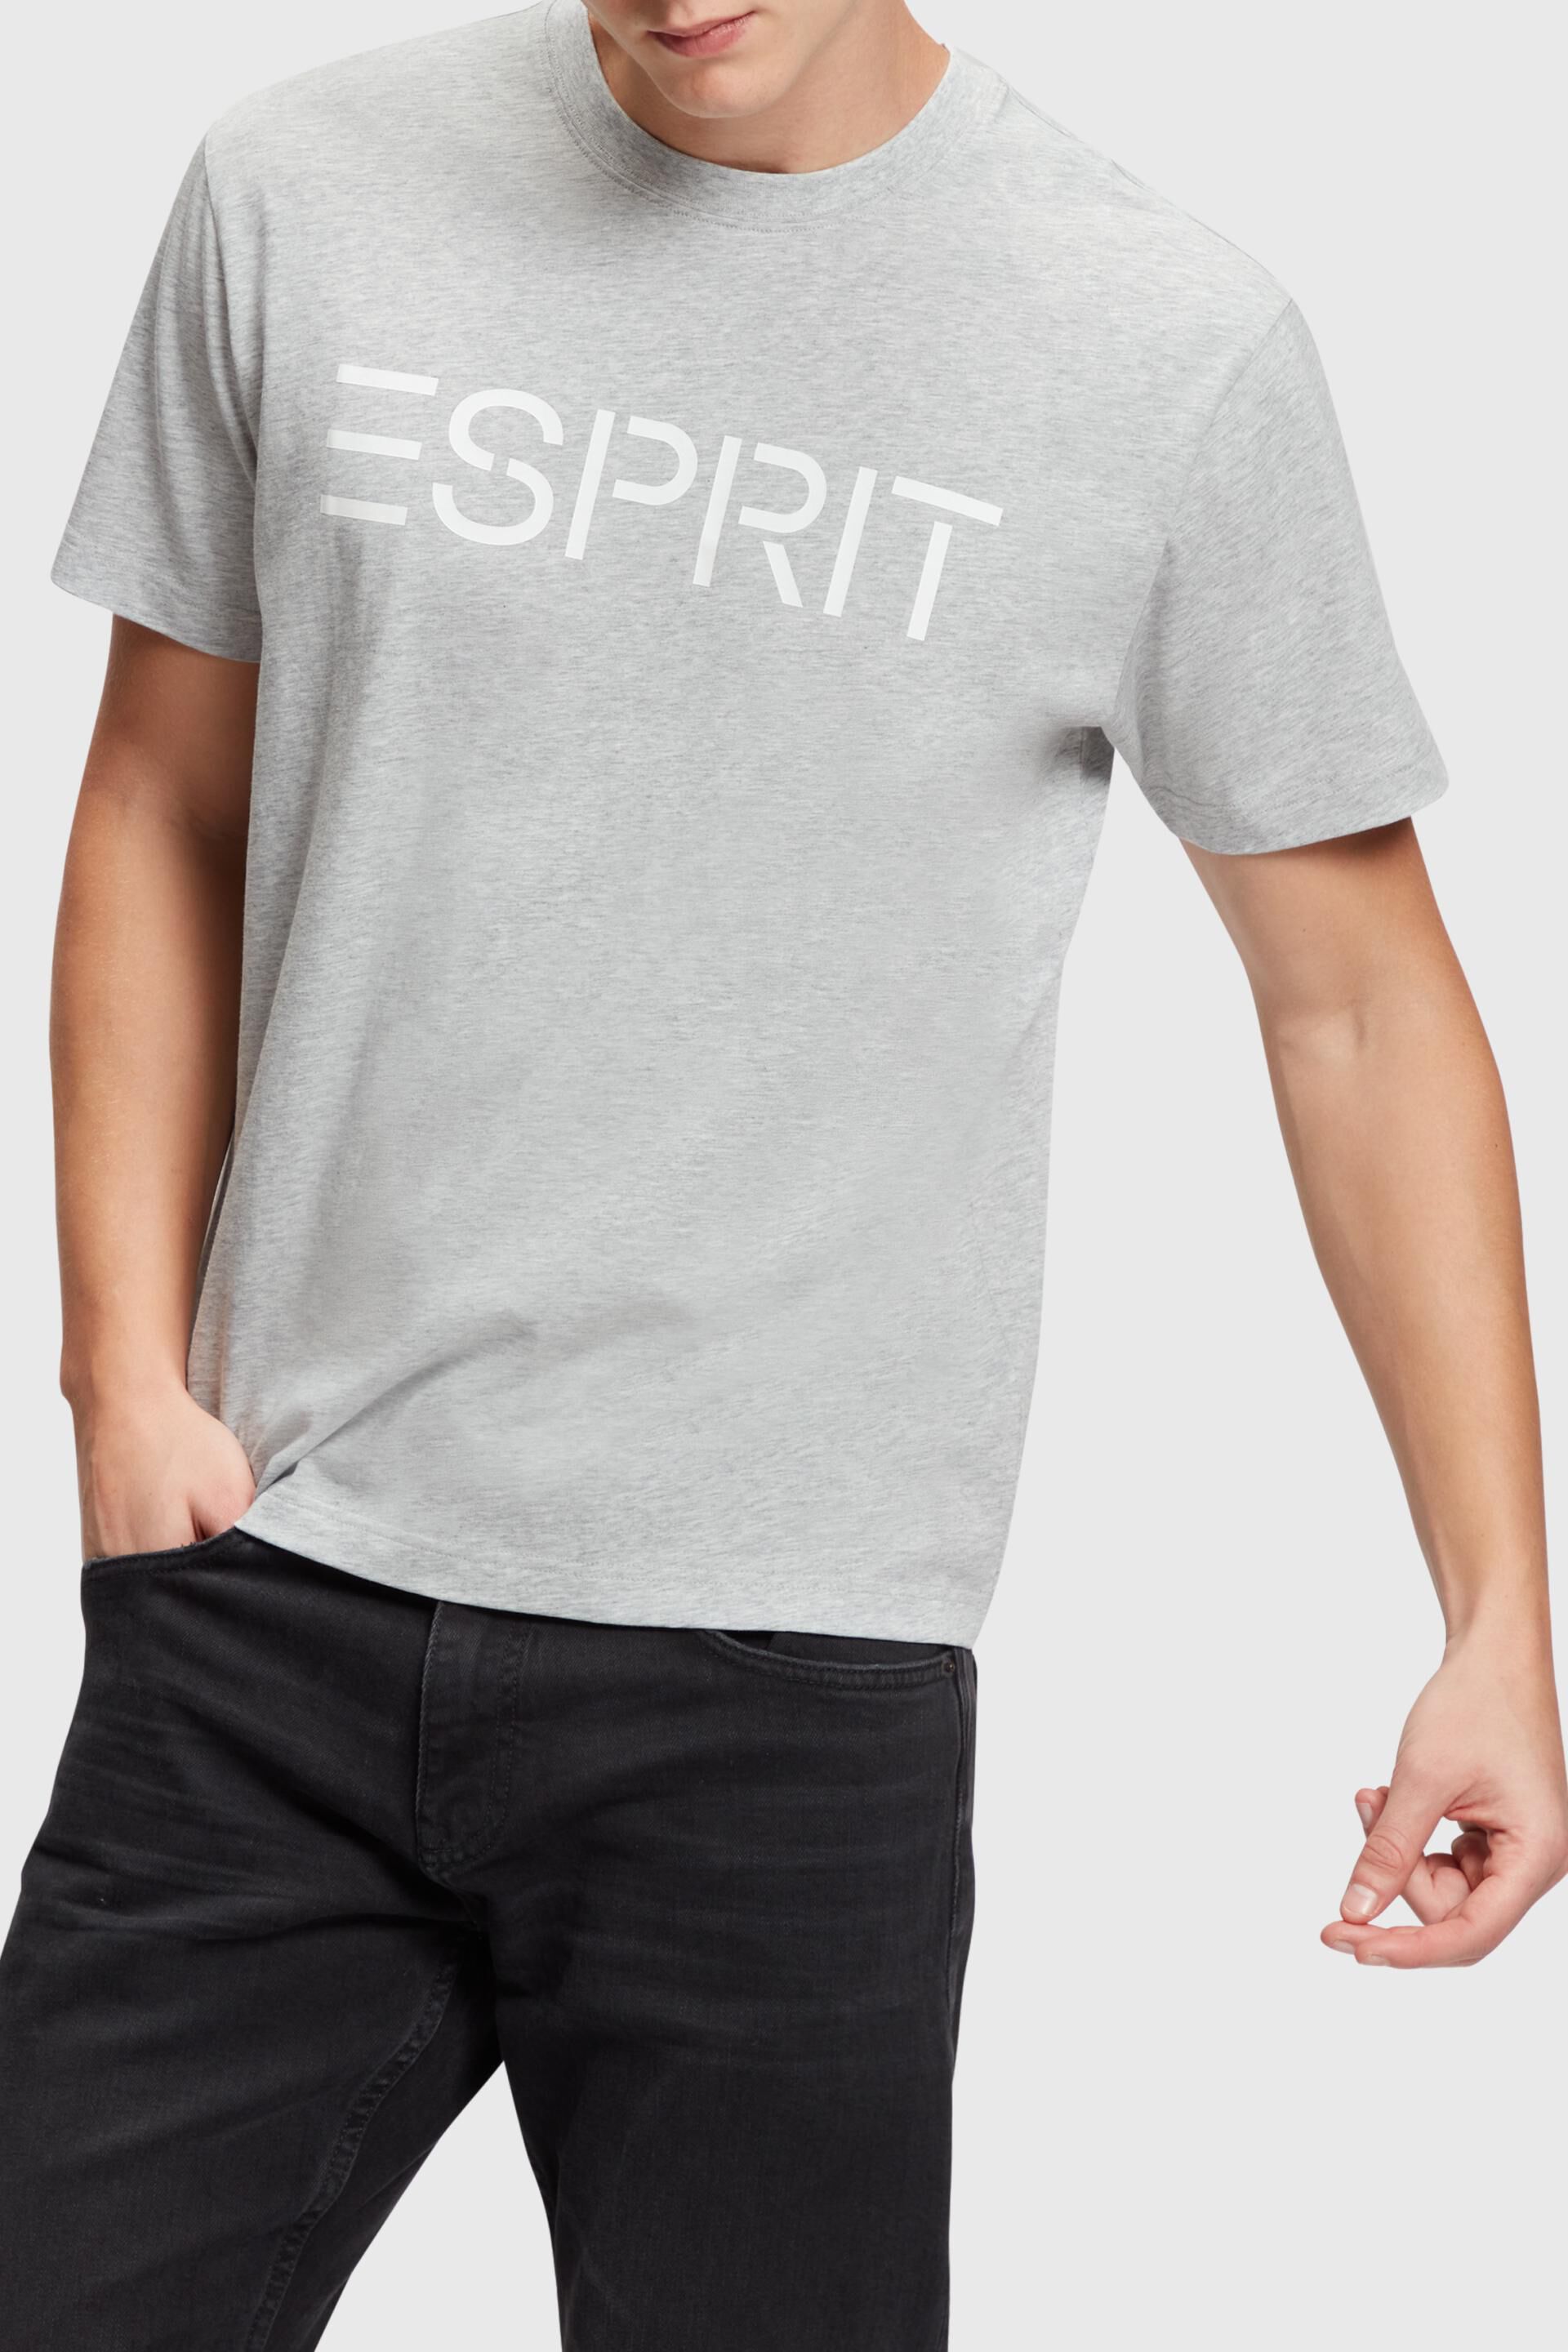 Esprit t-shirt Logo